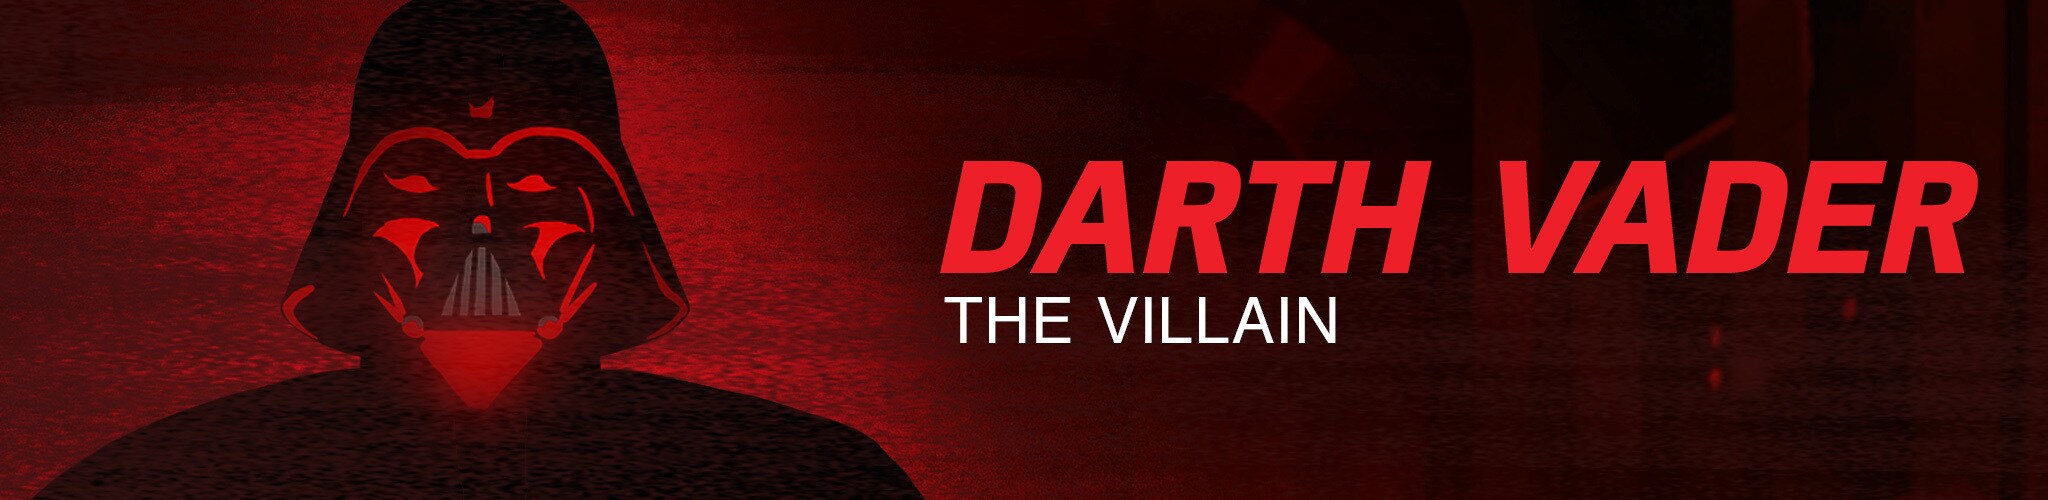 Darth Vader - The Villain